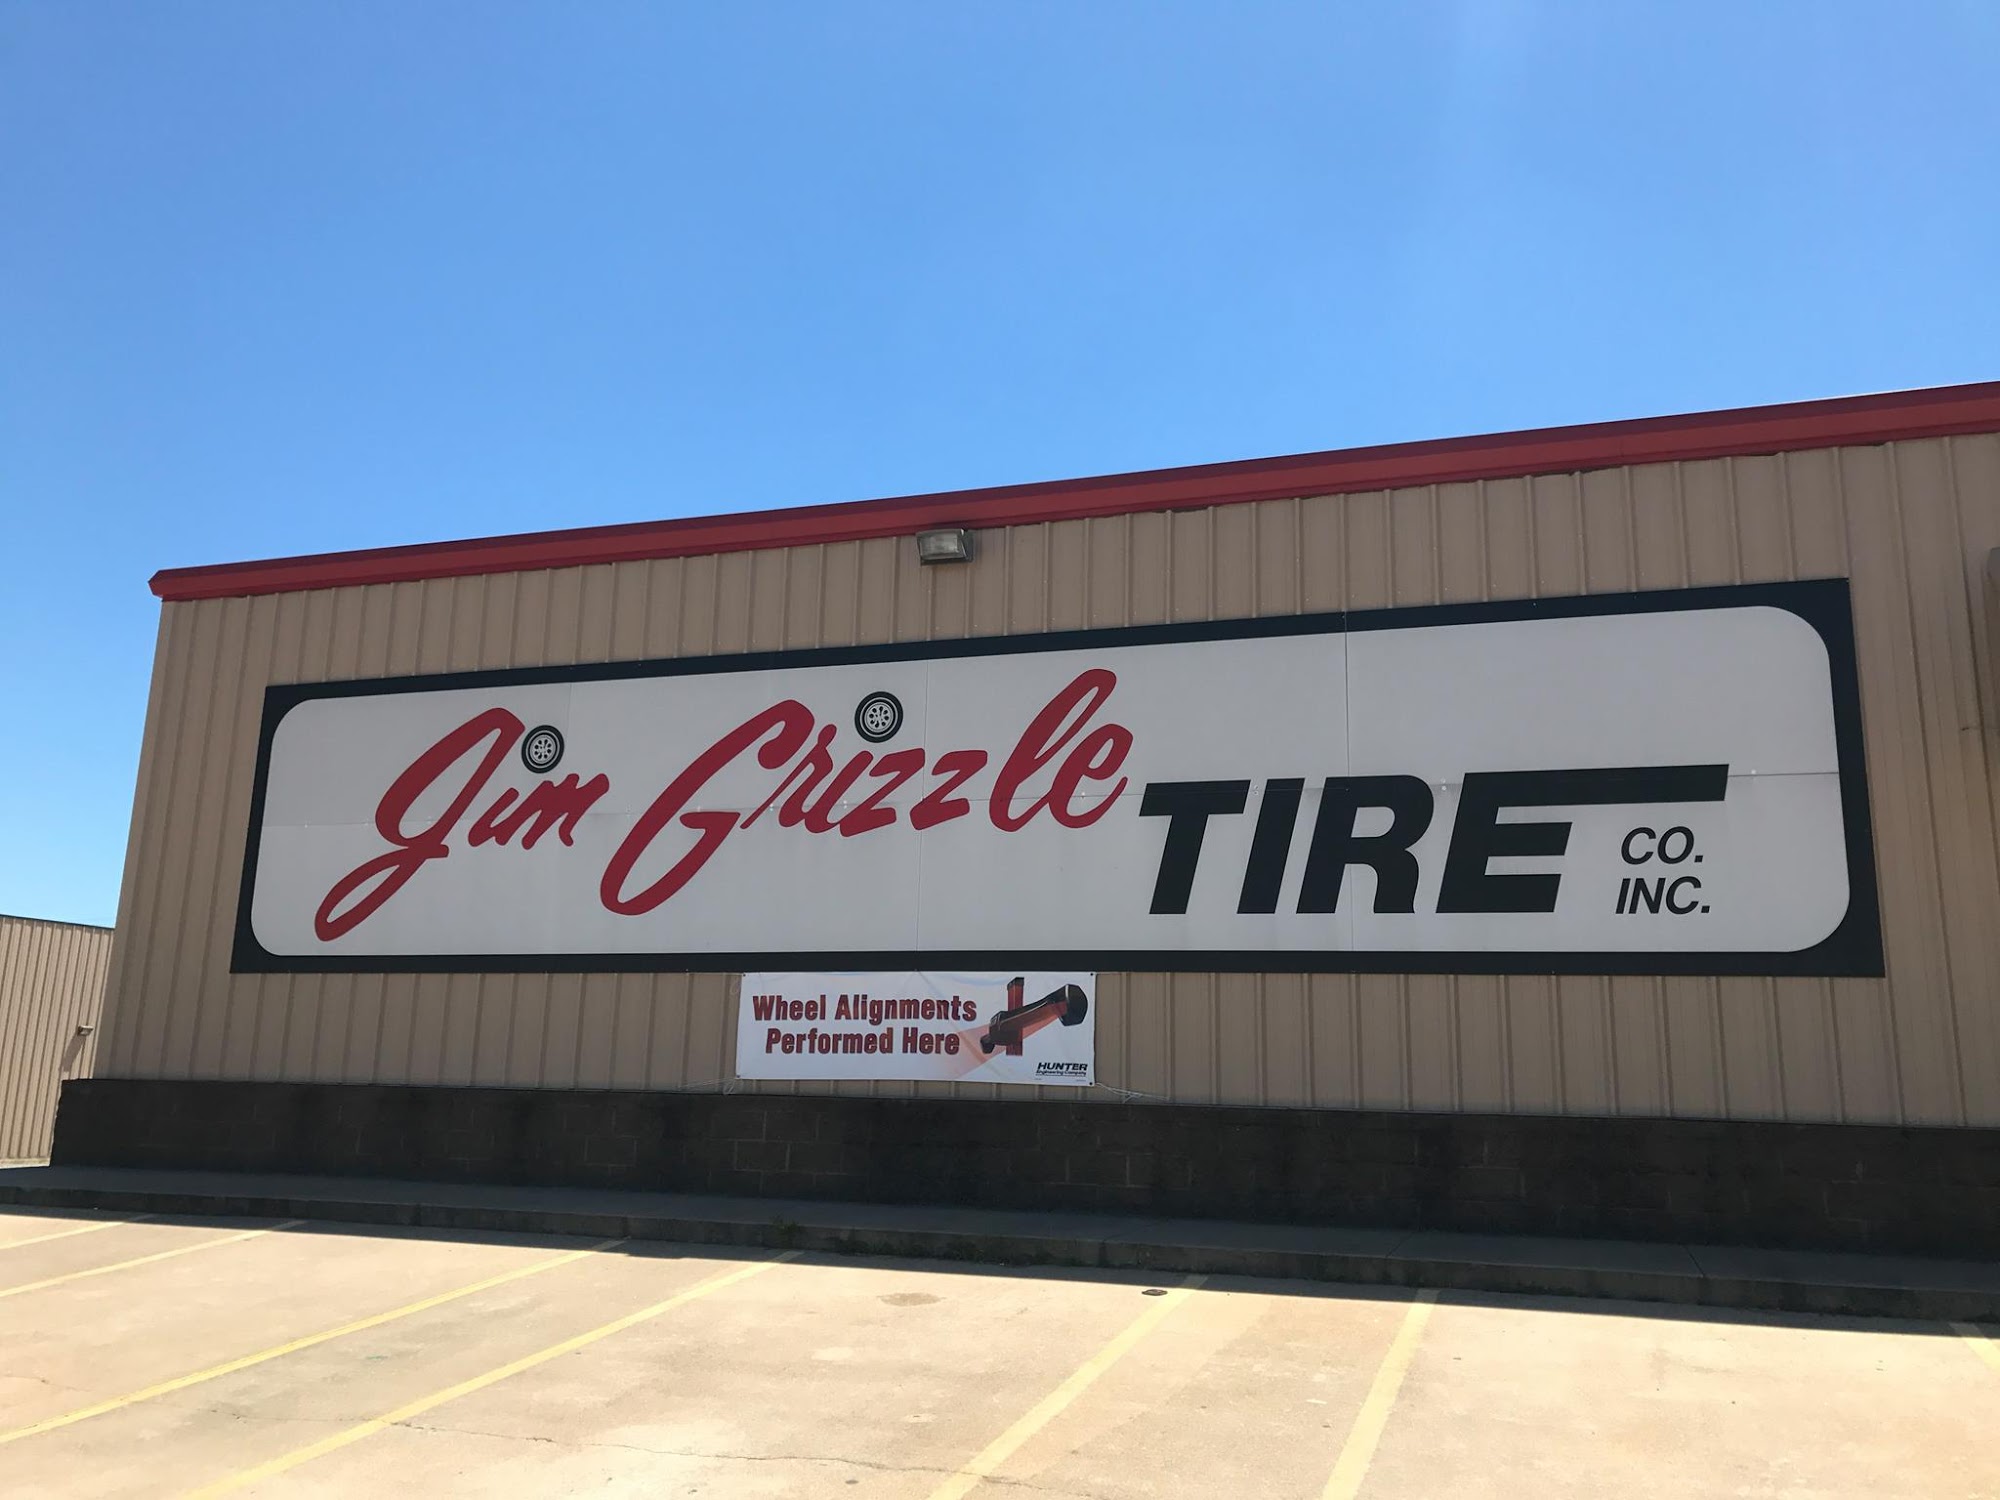 Jim Grizzle Tire Co. Inc